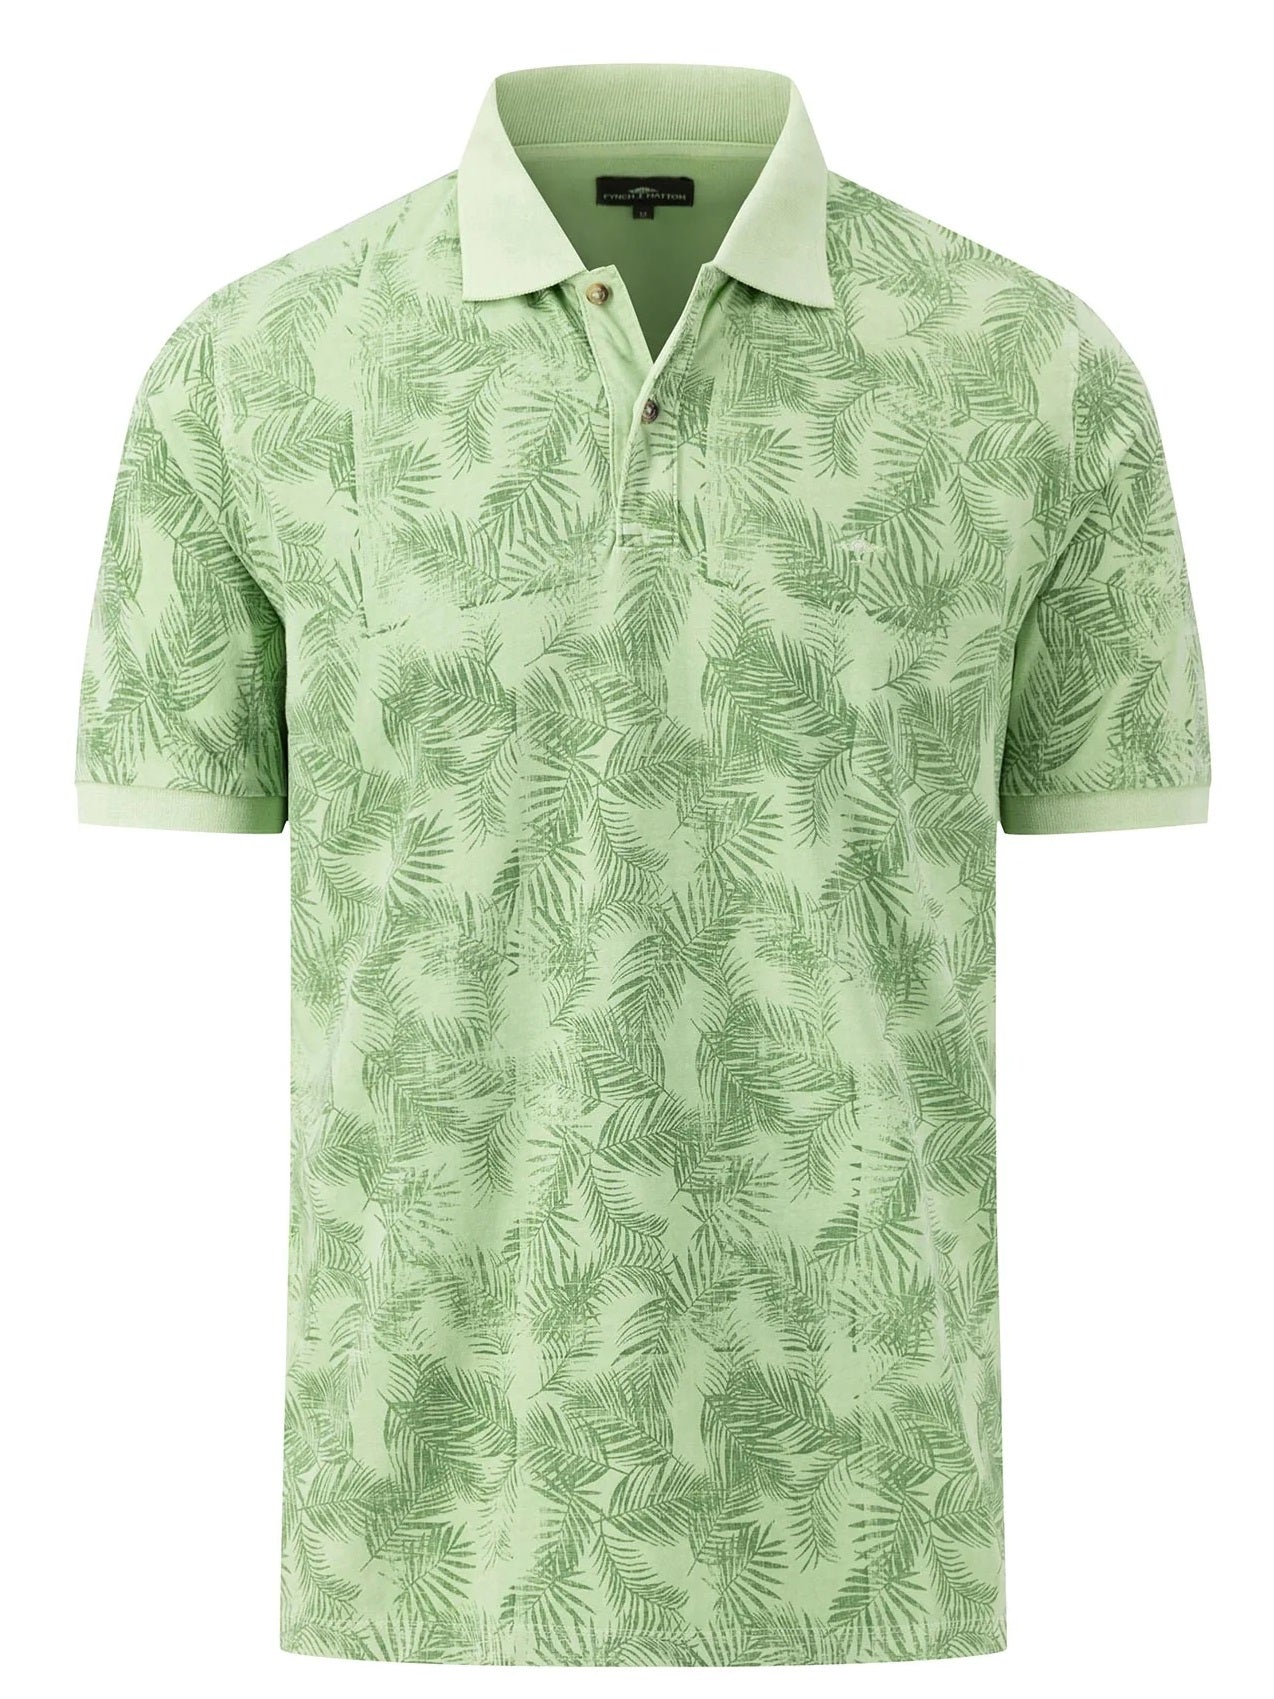 FYNCH HATTON Summer Print Polo Shirt - Men's Cotton – Soft Green